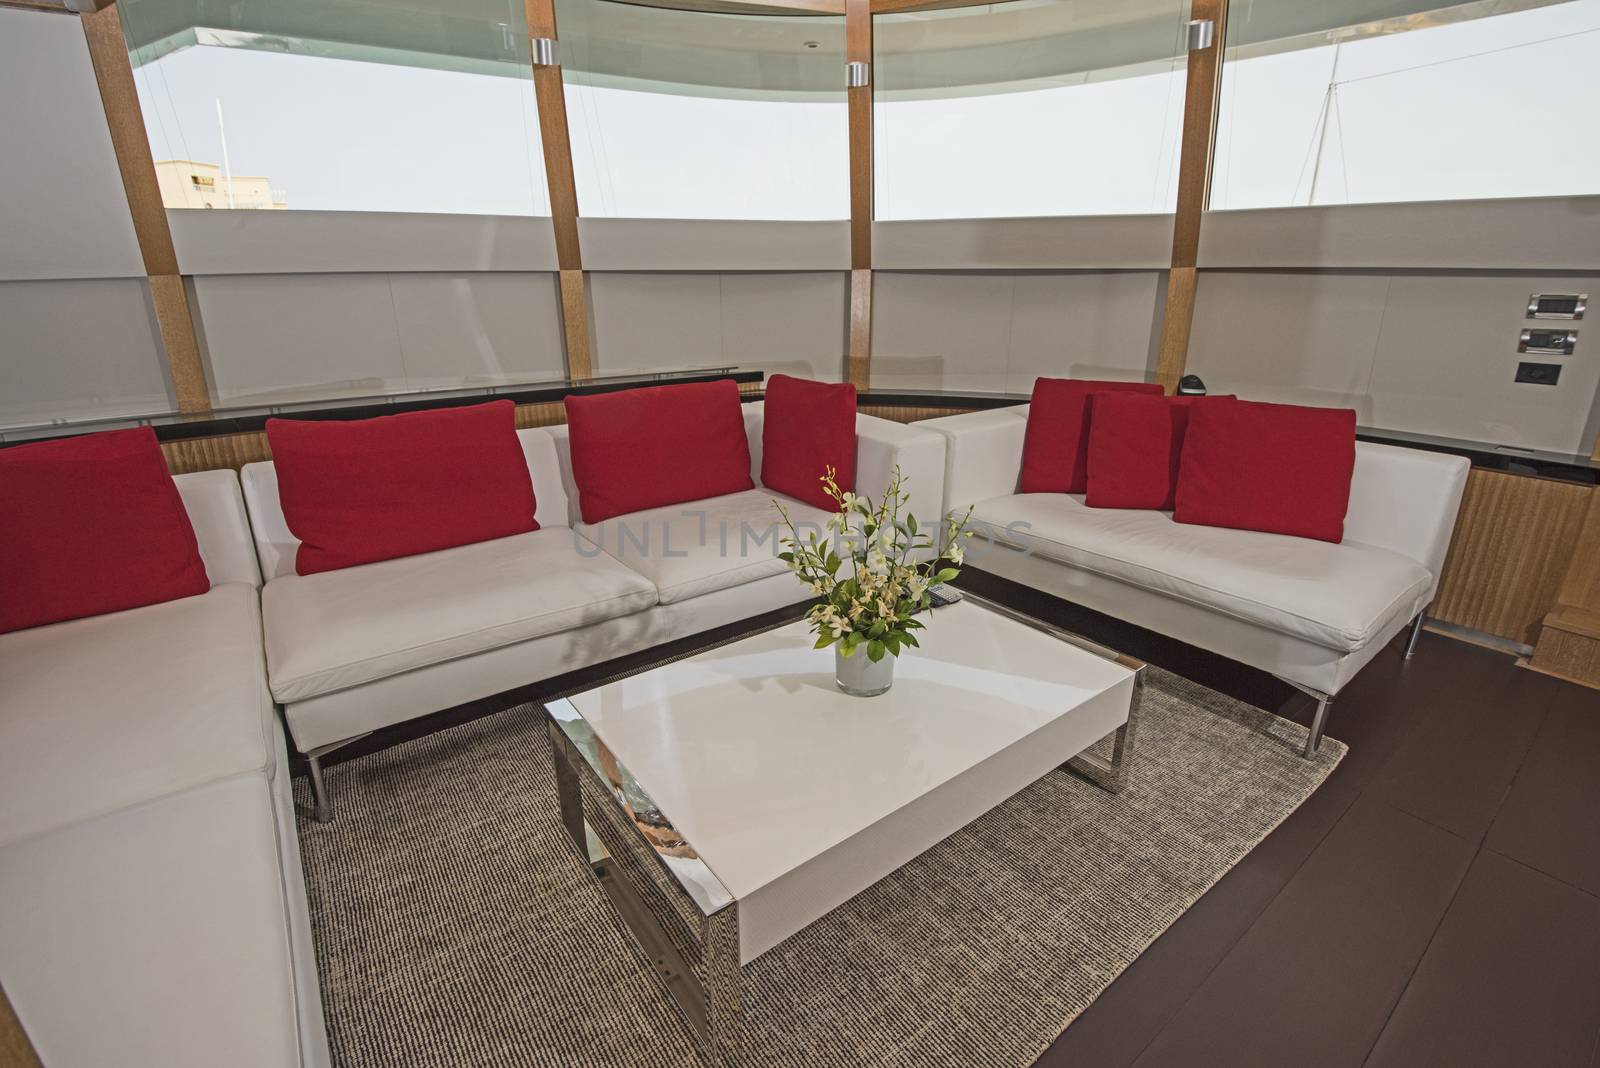 Salon area on large luxury motor yacht by paulvinten